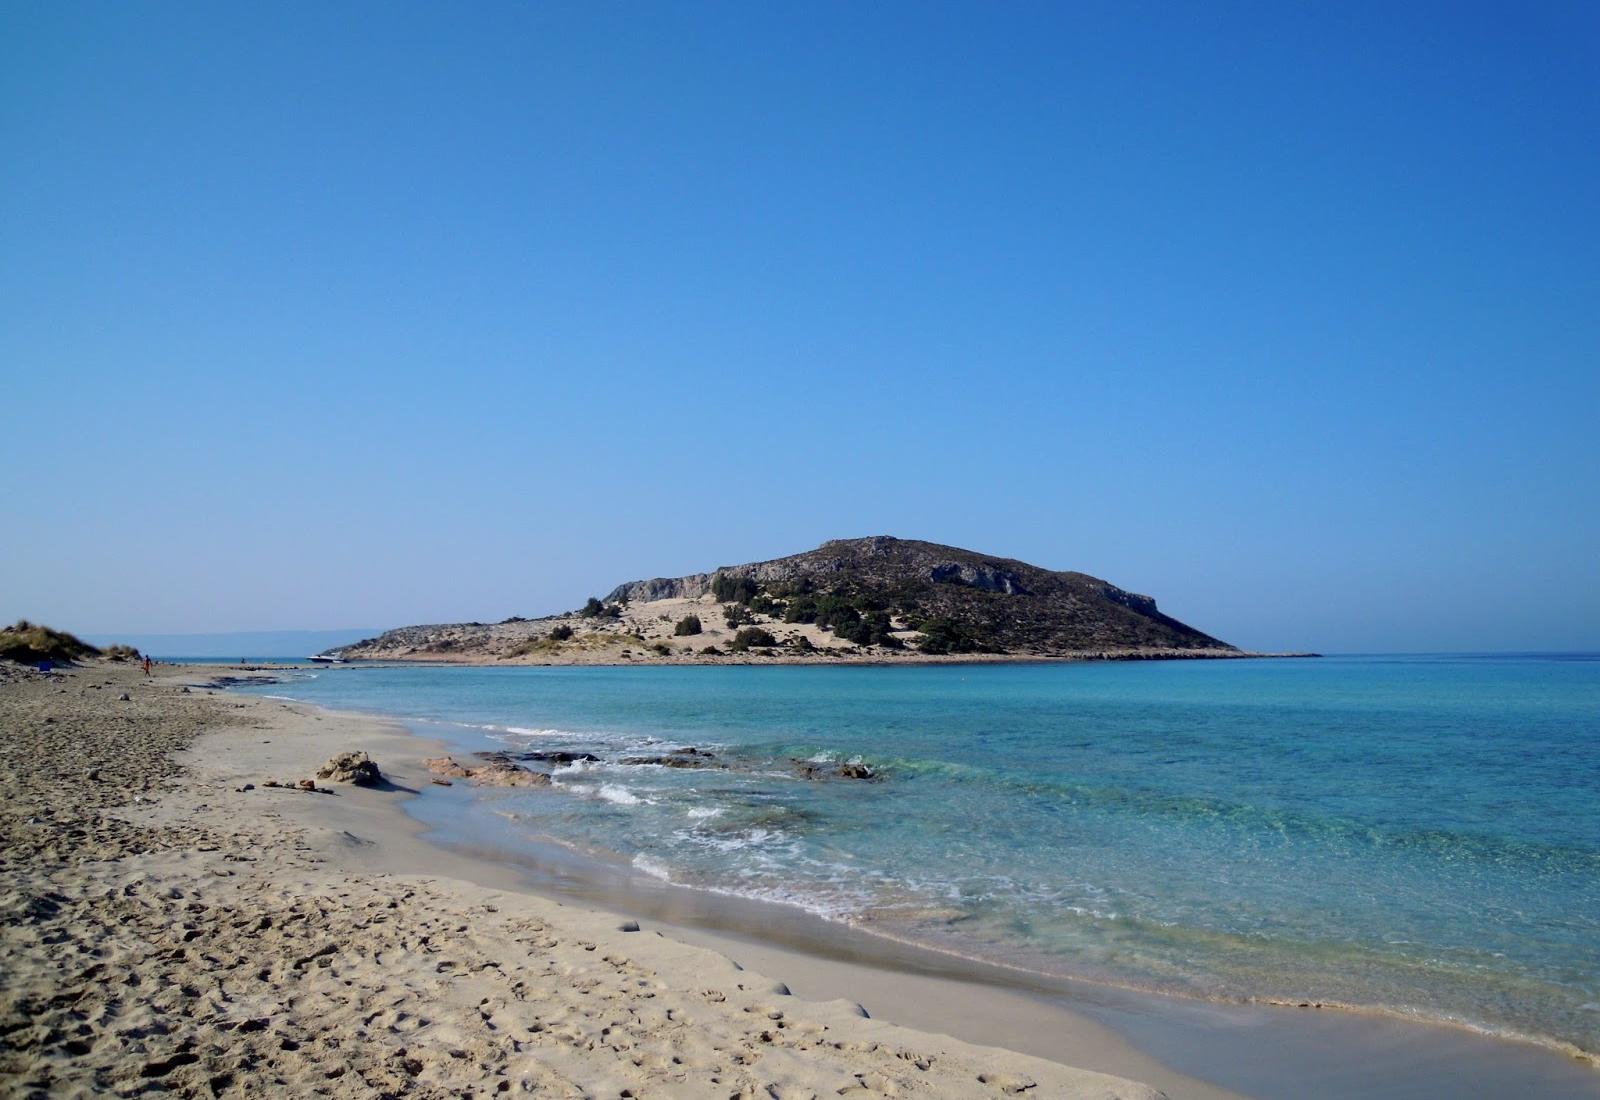 Sandee - Simos Beach